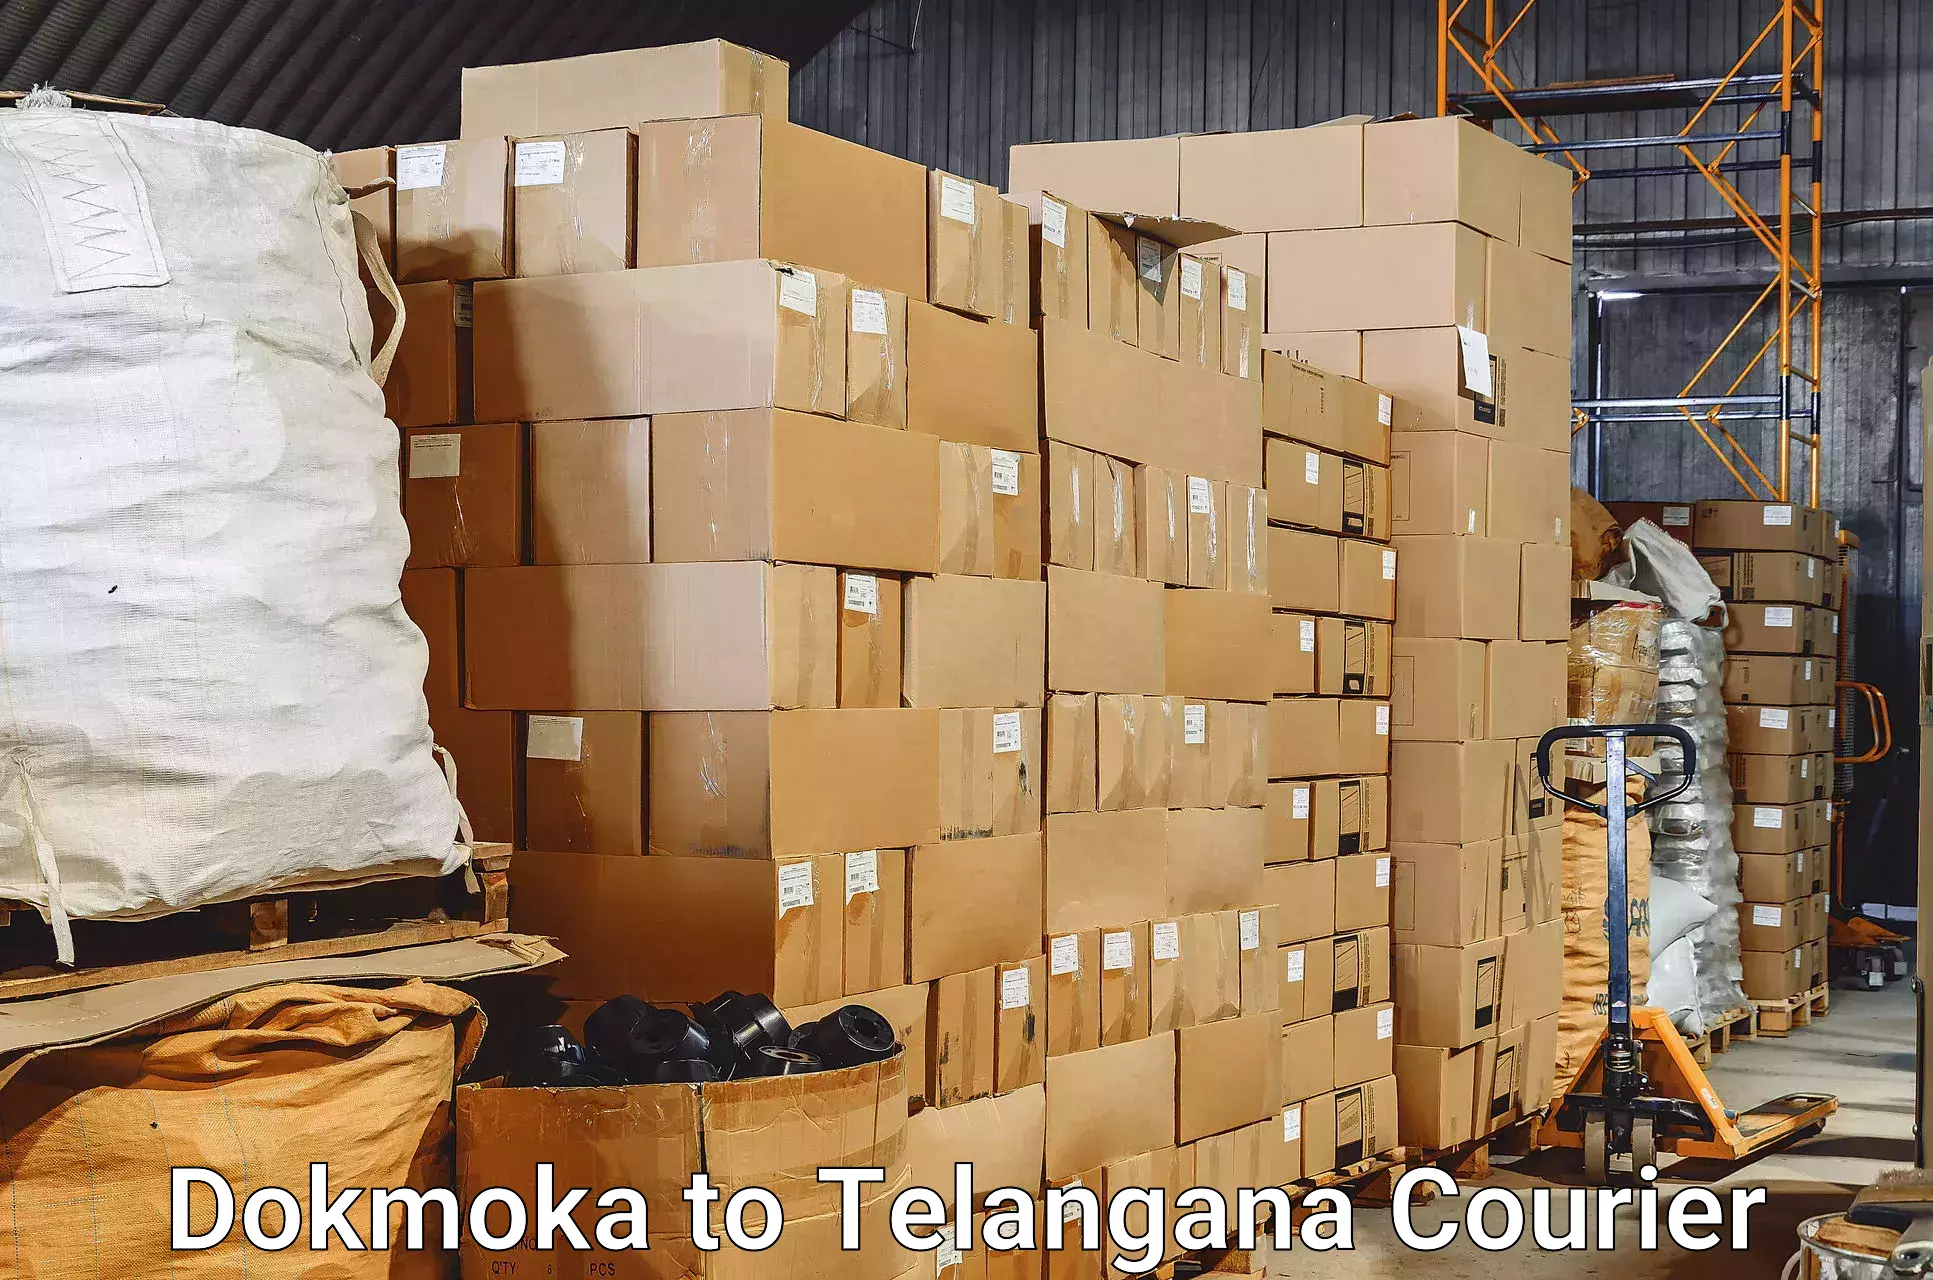 Baggage transport scheduler Dokmoka to Manuguru